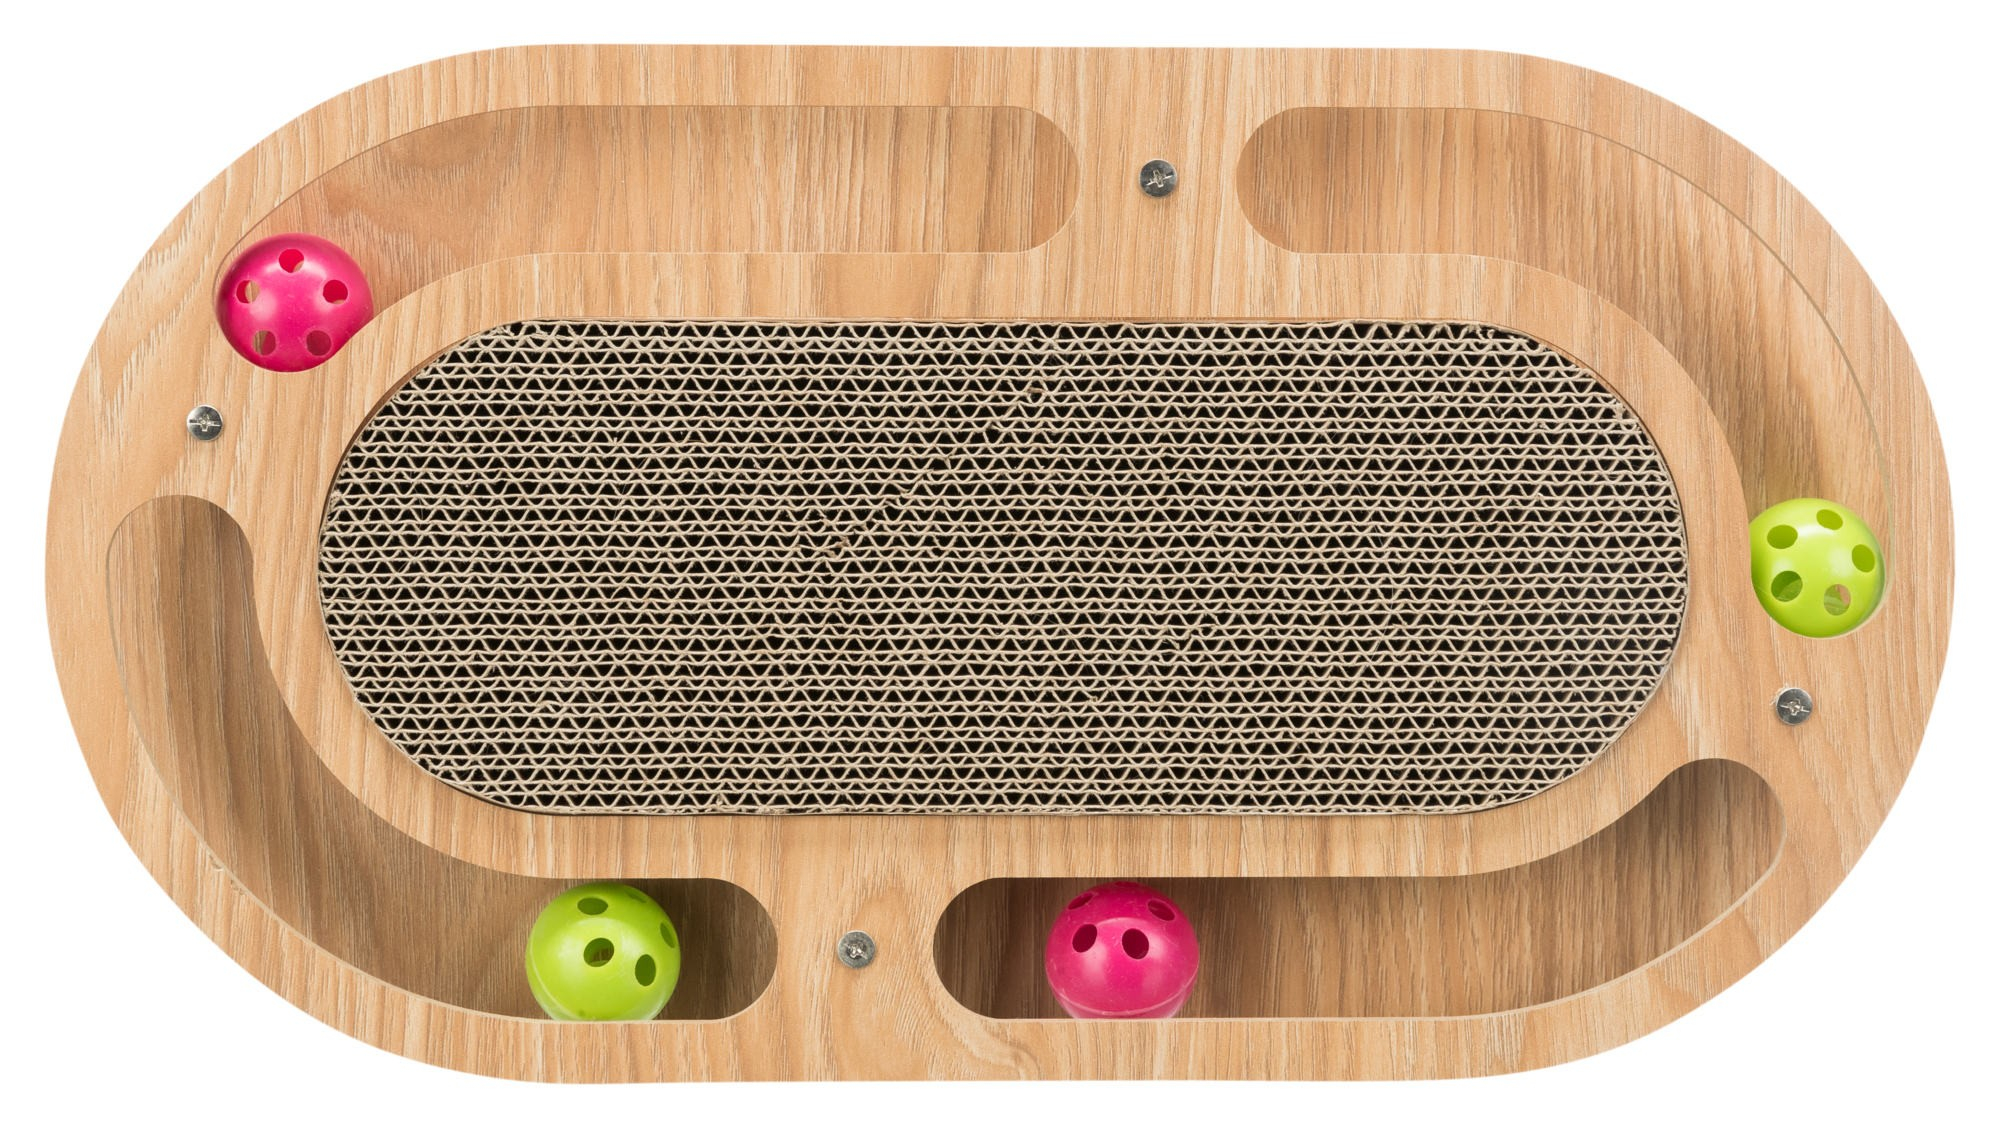 Raspador oval de cartão de madeira com bolas